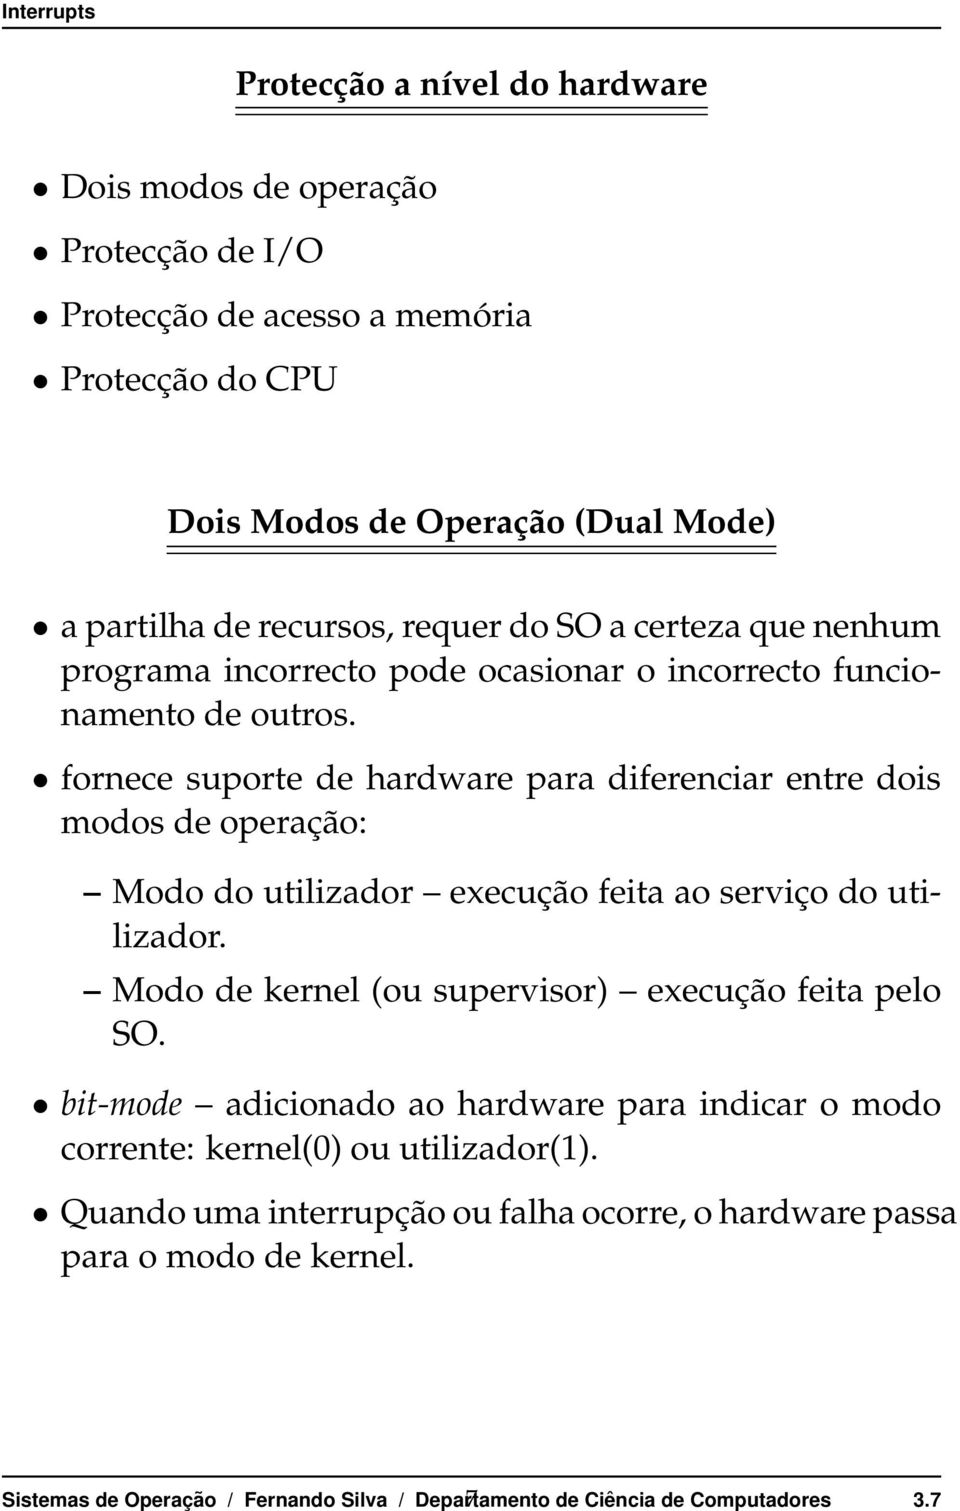 dois modos de operação: Mododoutilizador execuçãofeitaaoserviçodoutilizador Mododekernel(ousupervisor) execuçãofeitapelo SO bit-mode adicionado ao hardware para indicar o